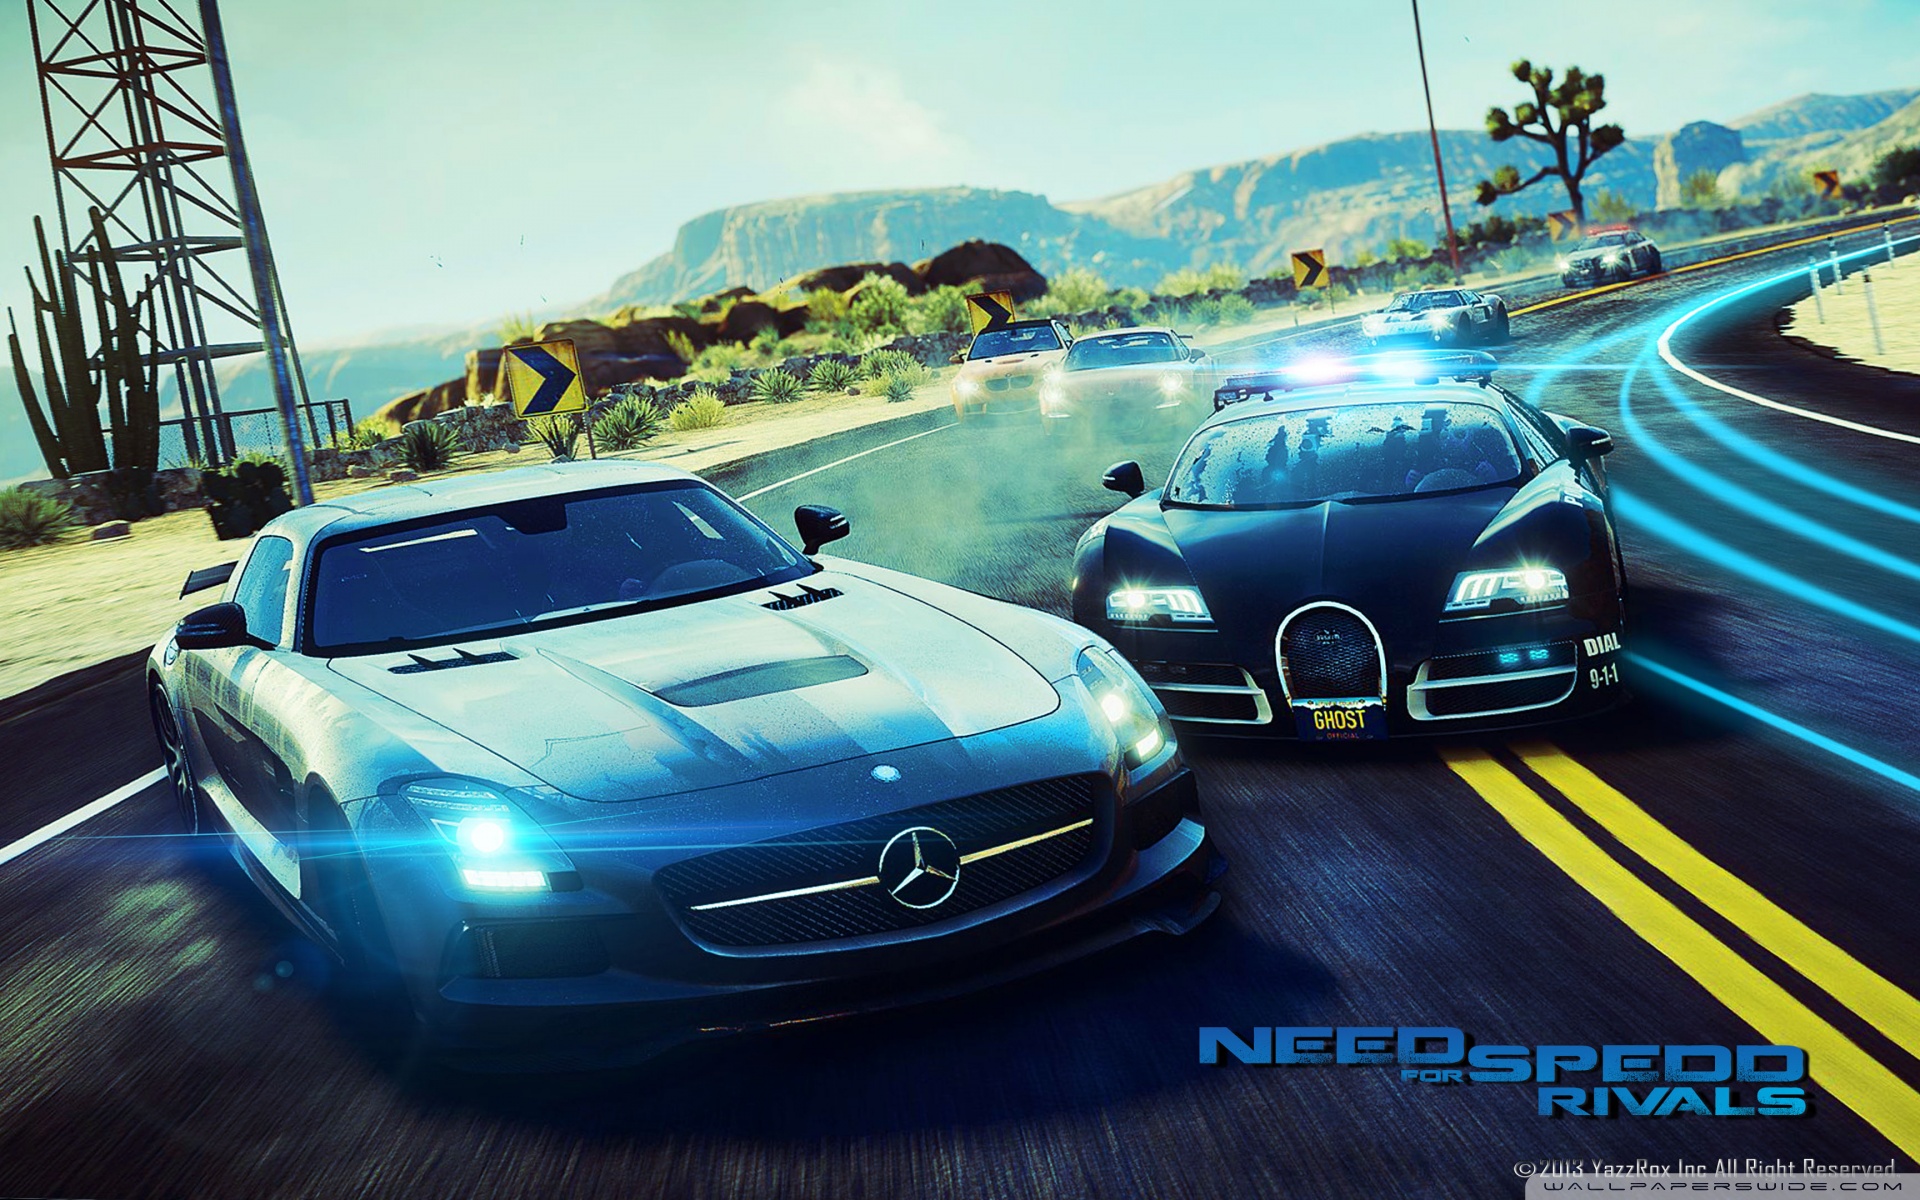 Нид фор спид пс. Игра NFS Rivals. Нид фор СПИД ривалс. Need for Speed Rivals 2013.